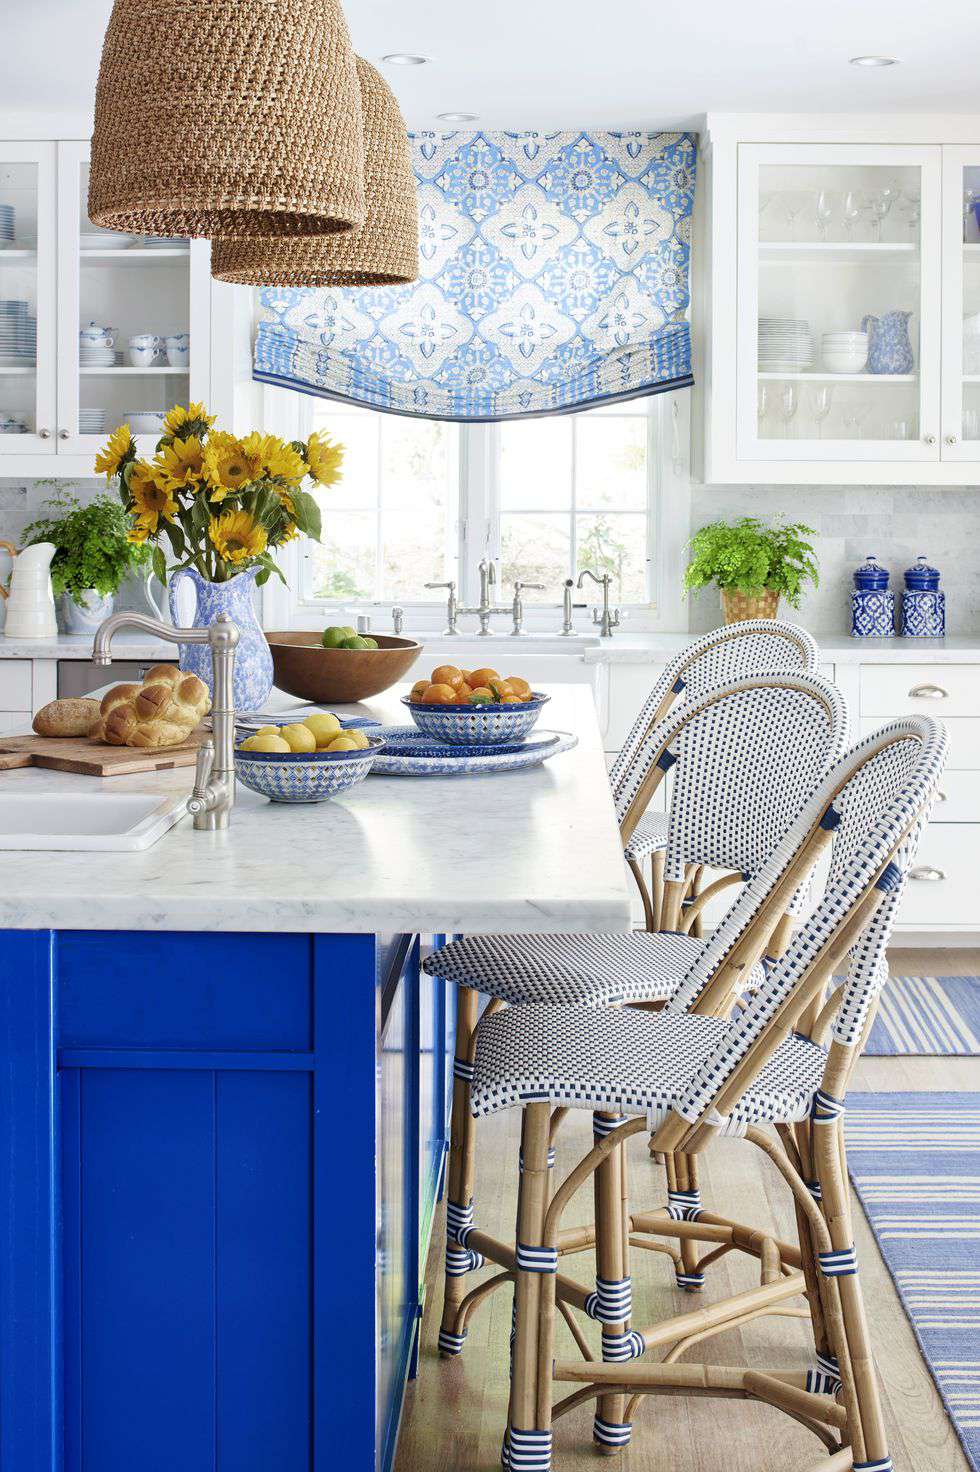 10 ý tưởng phối màu tủ bếp đáng thử cho không gian nấu nướng hiện đại